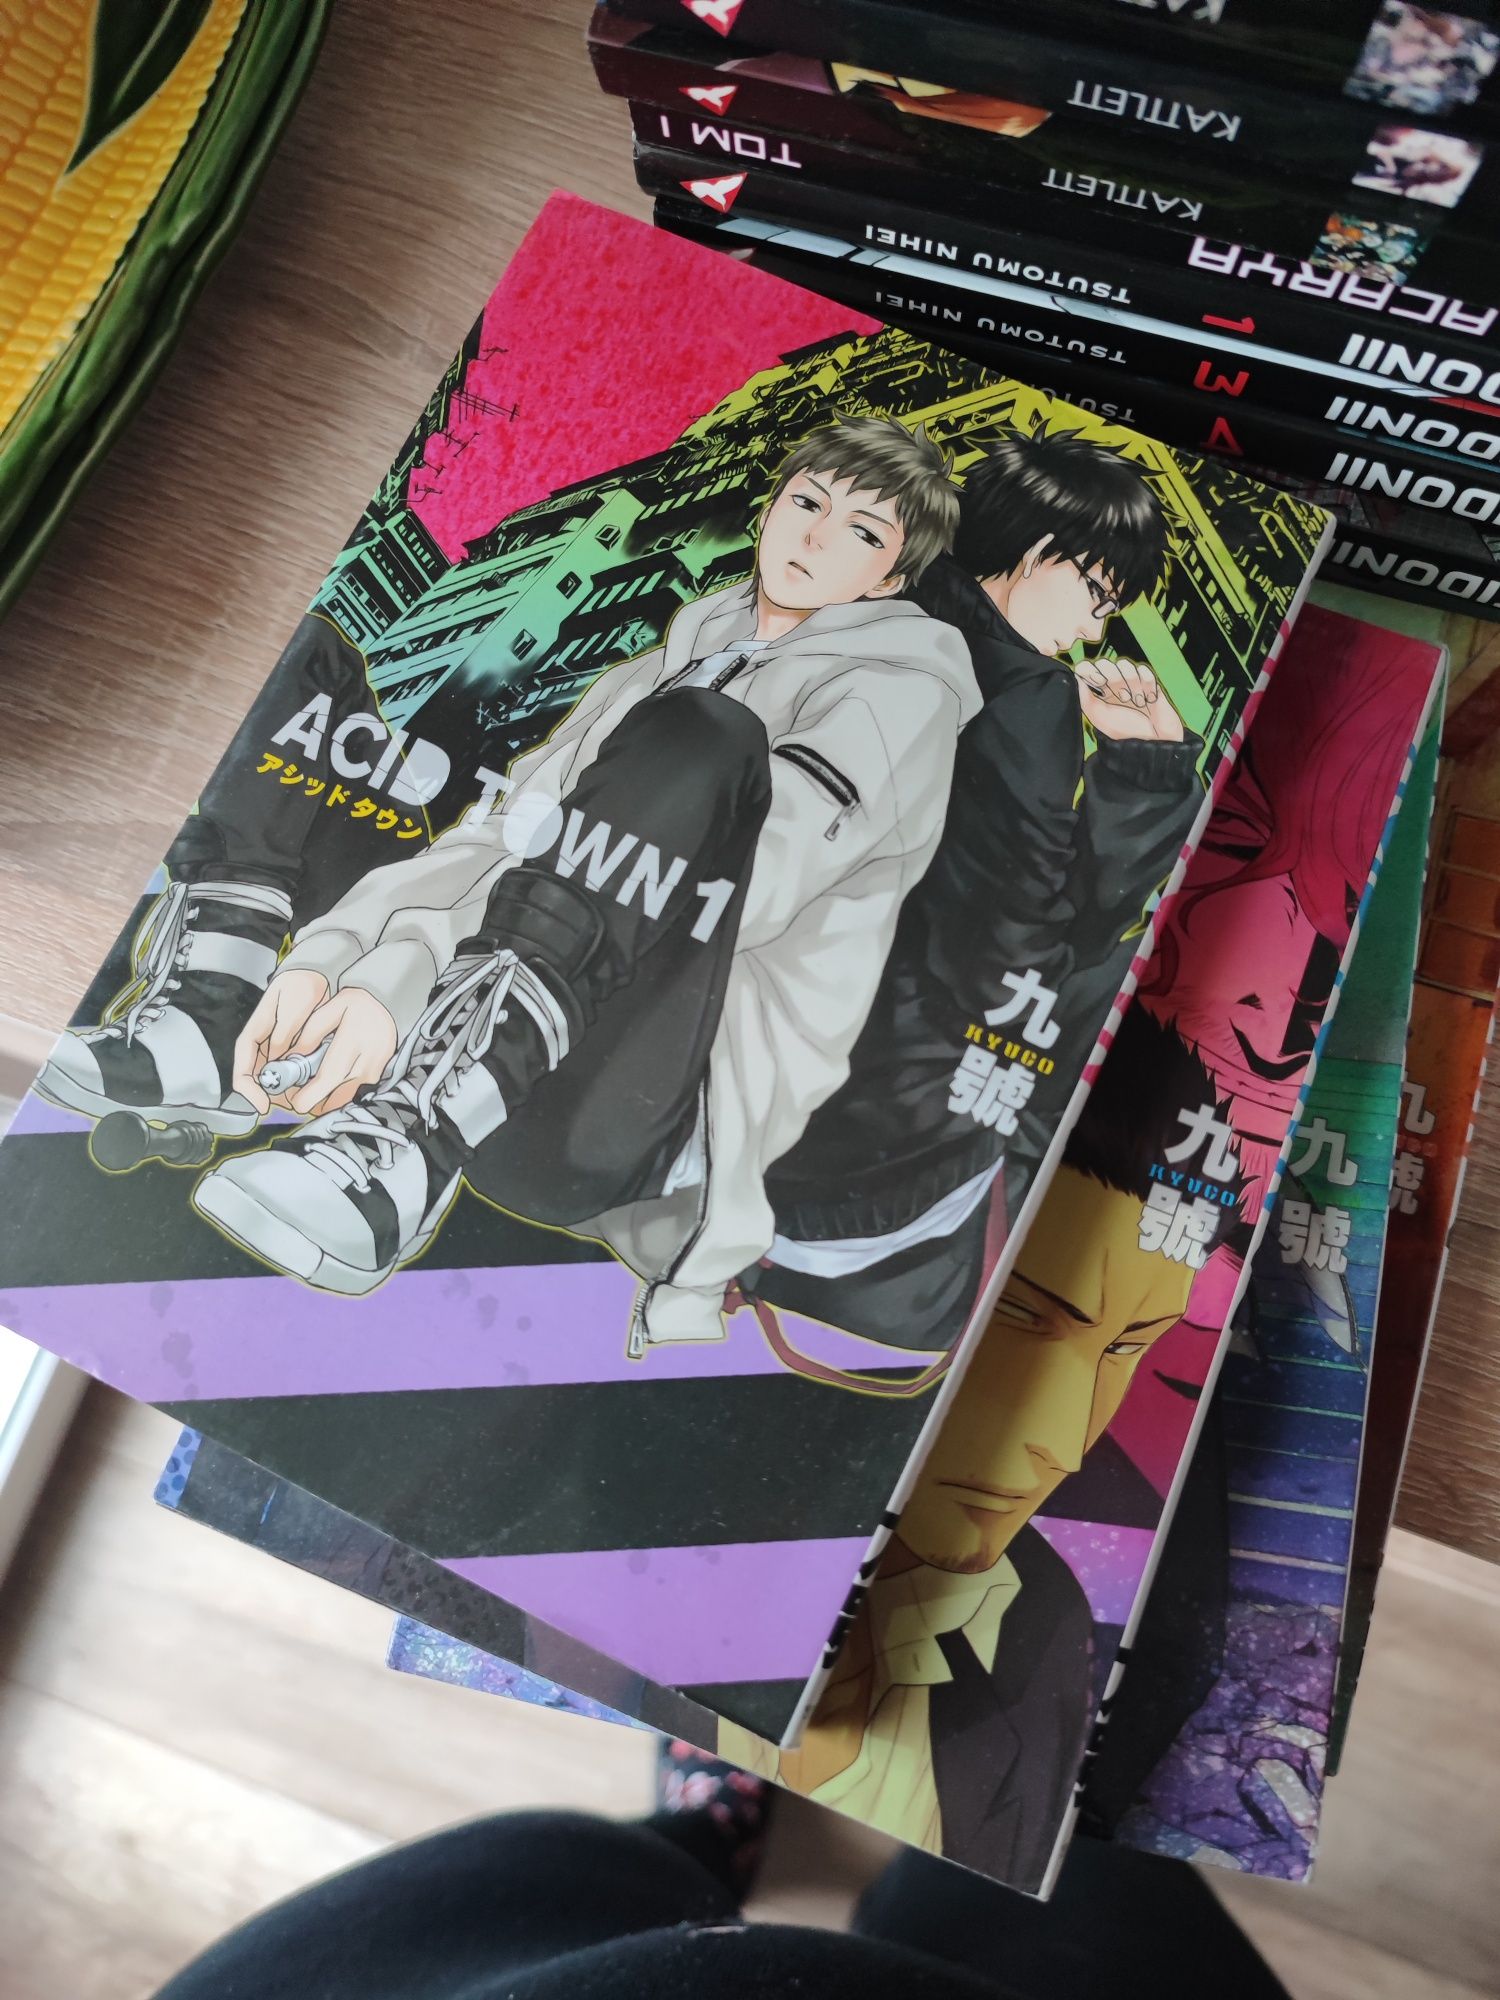 Acid Town 1-4 komplet dobry stan jak nowy komiks manga